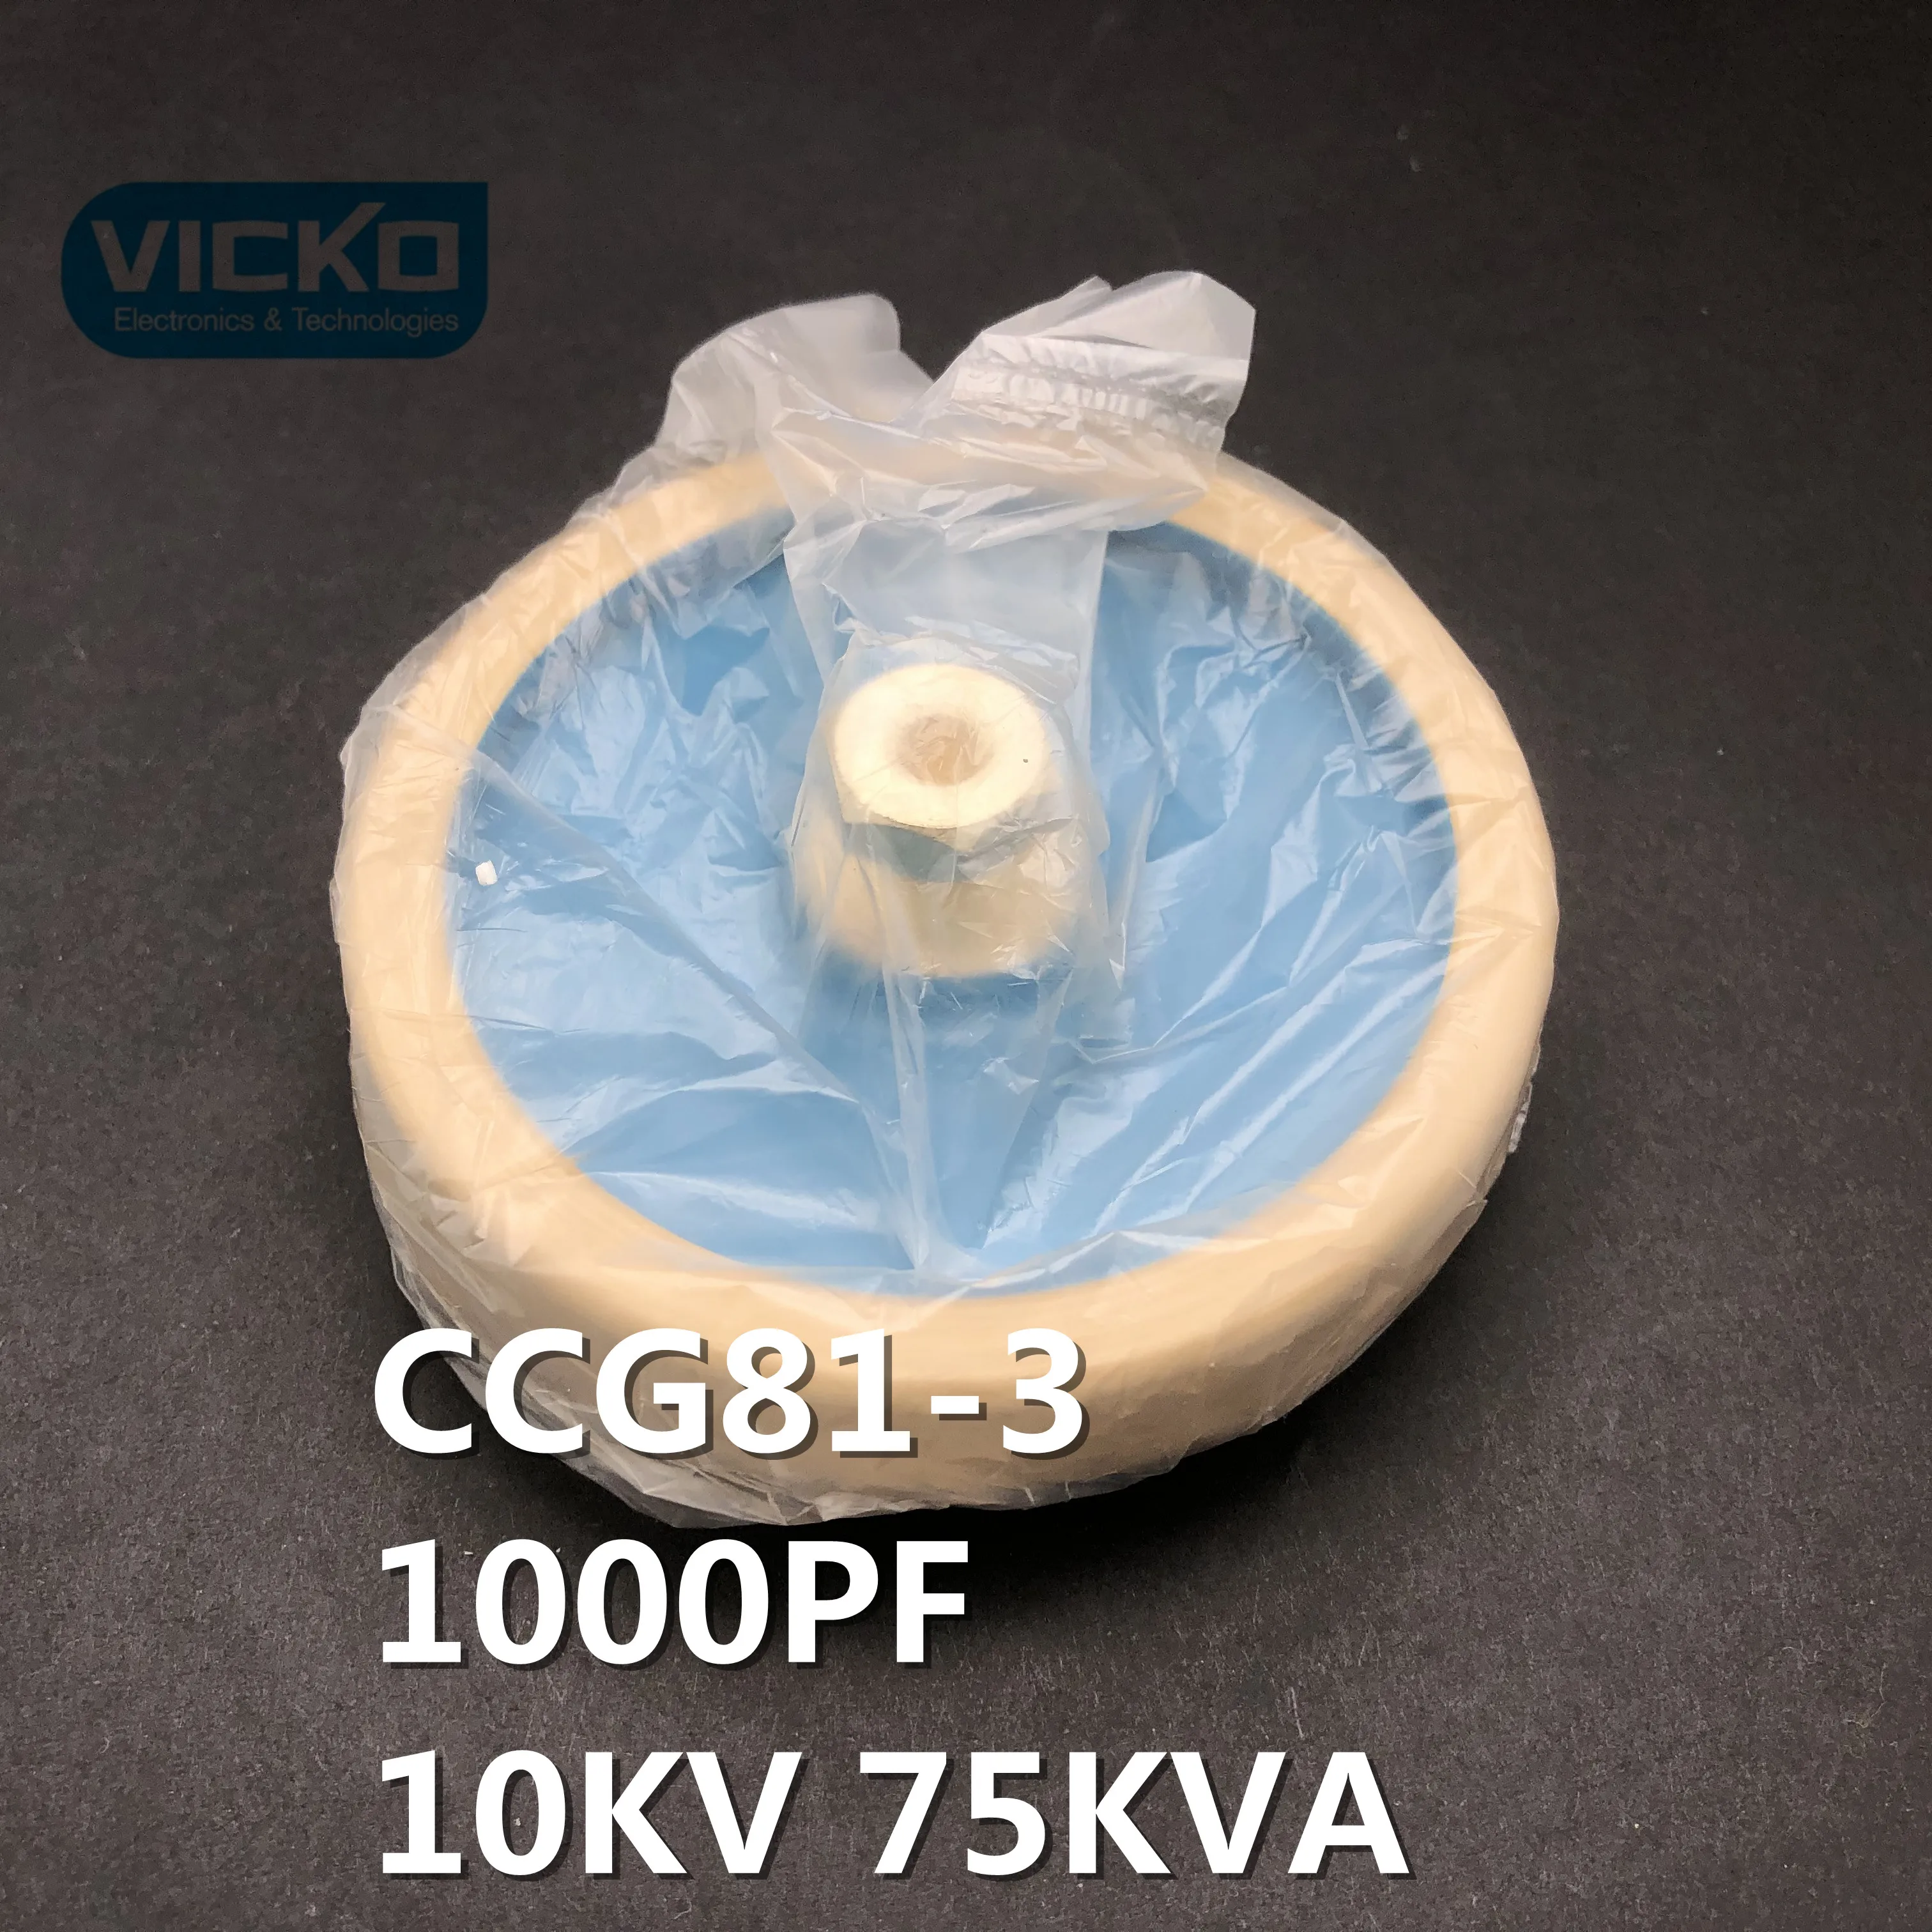 [VK] CCG81-3 1000PF 10KV 75KVA круглая керамическая фарфоровая высокочастотная машина новая